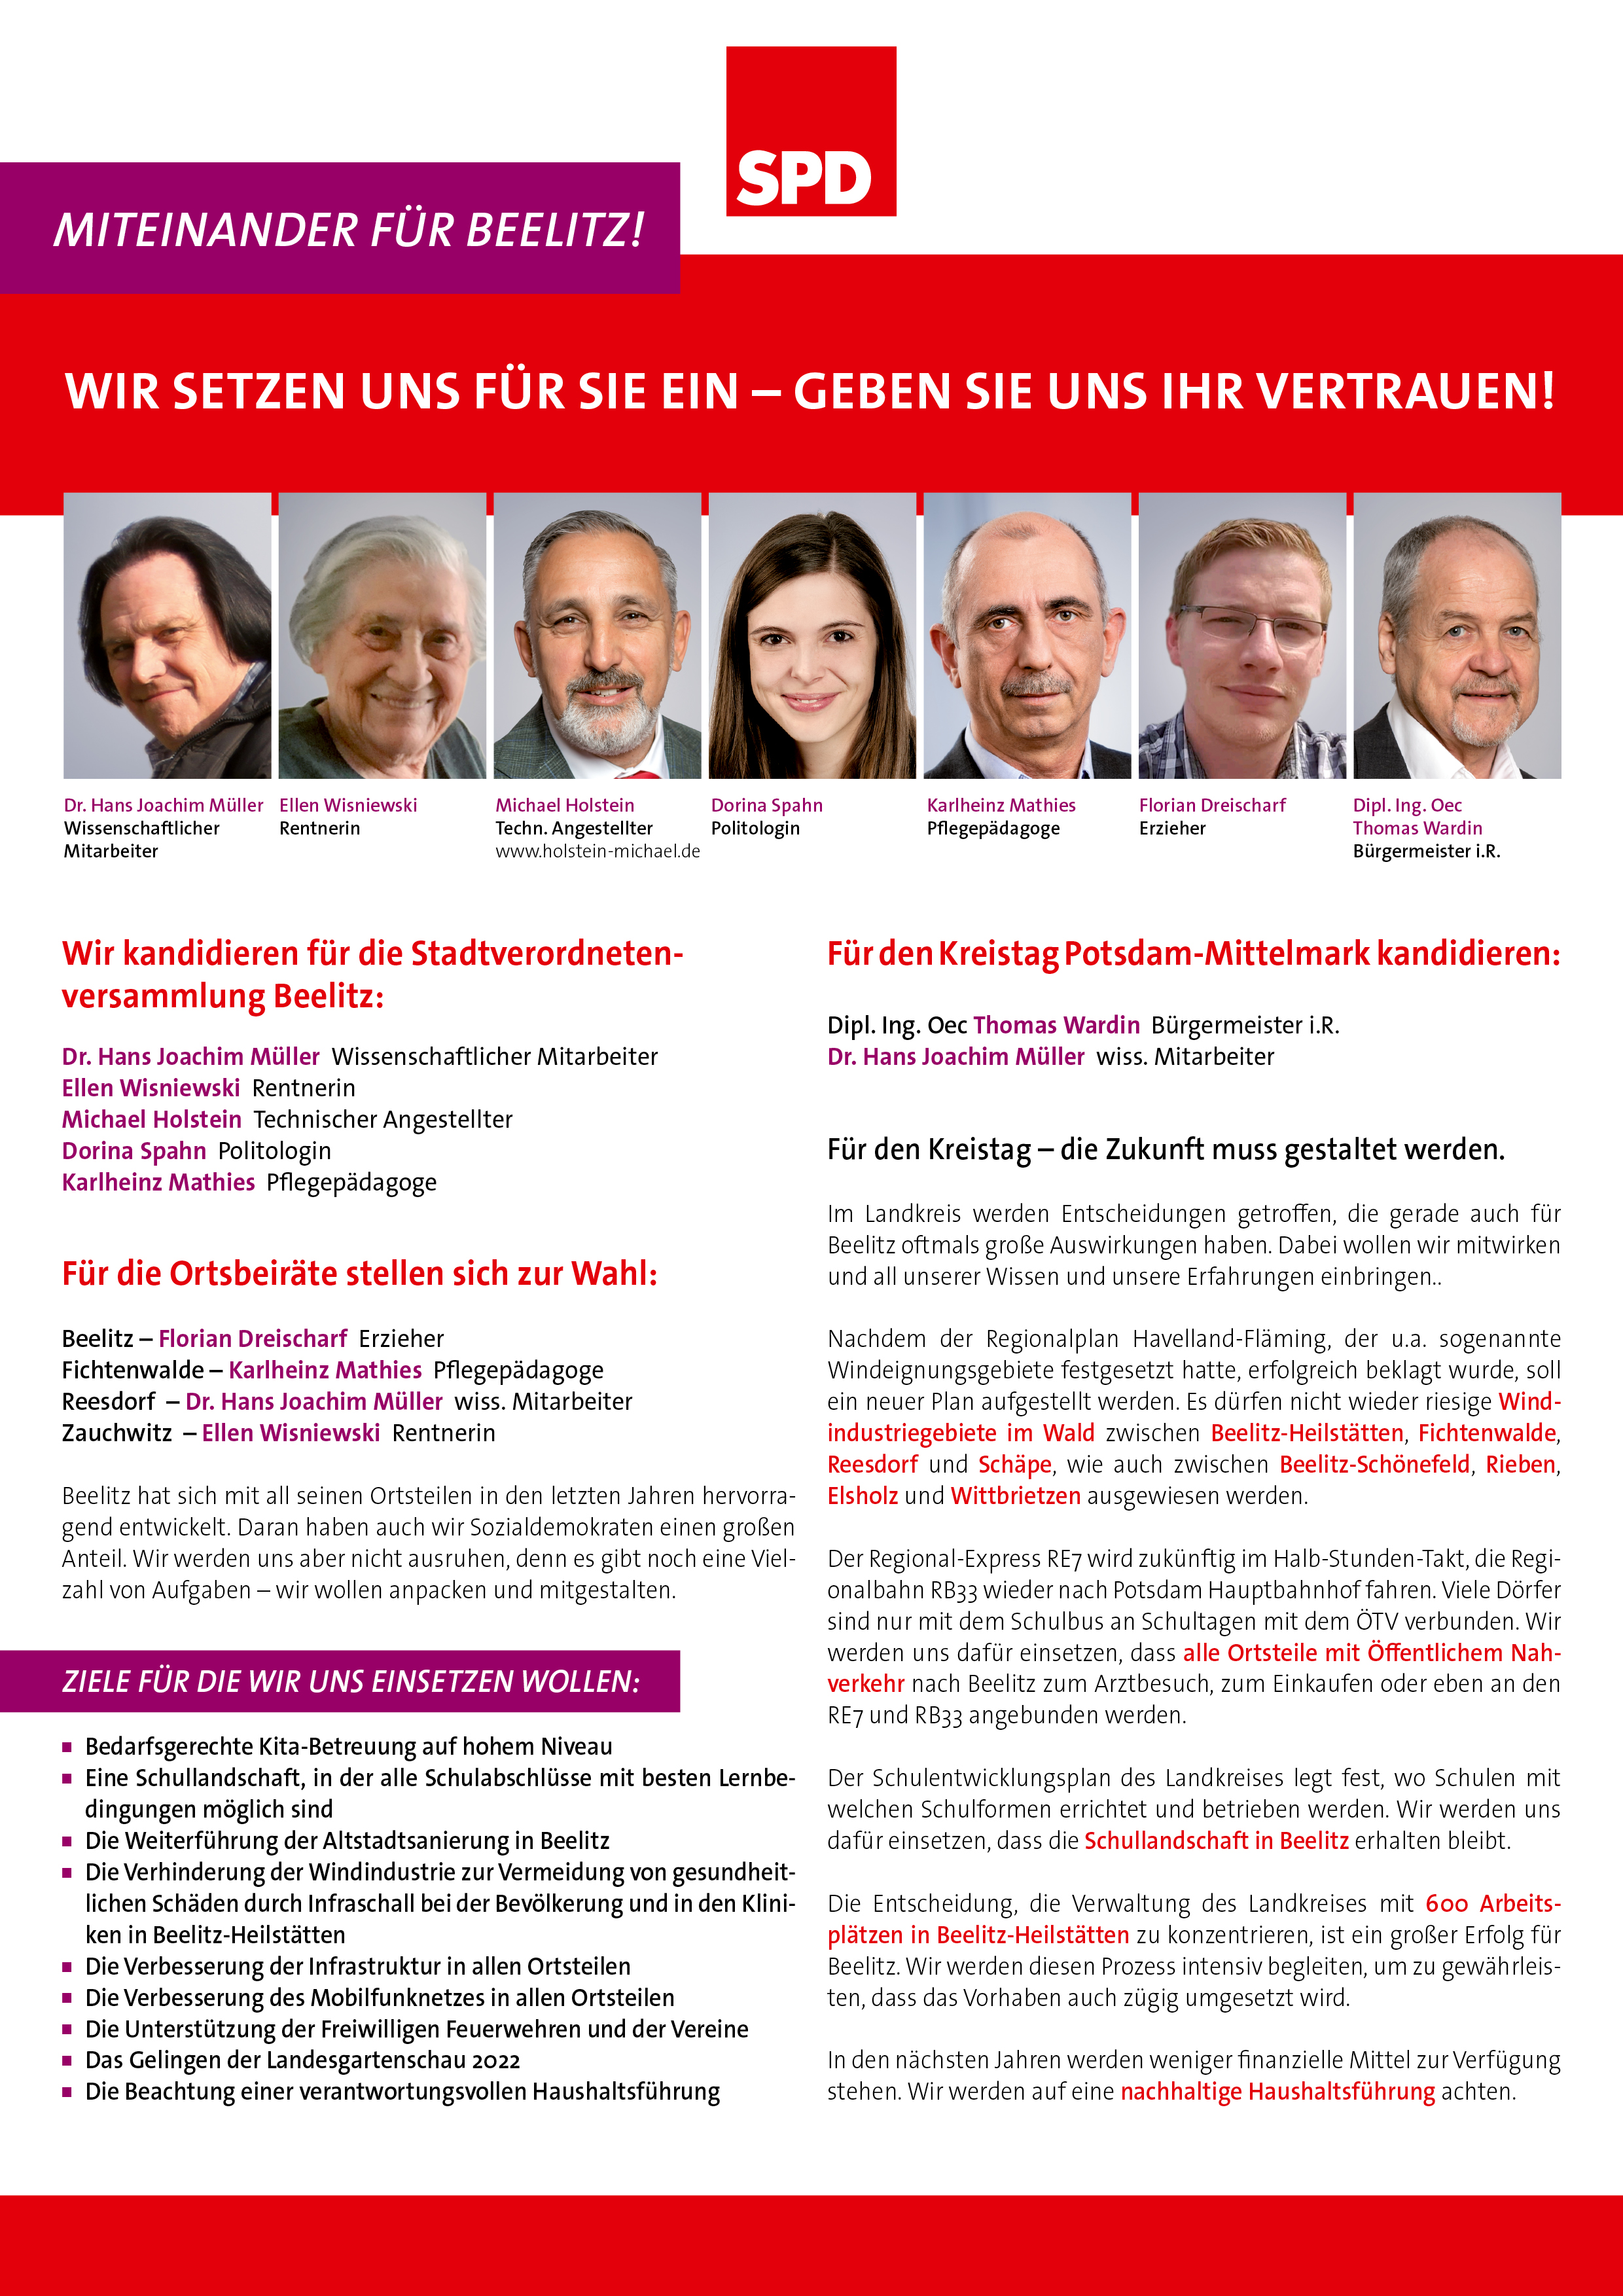 Wir kandidieren für die Stadtverordnetenversammlung Beelitz, für die Ortsbeiräte Beelitz, Fichtenwalde, Reesdorf und Zauchwitz sowie für den Kreistag Potsdam-Mittelmark